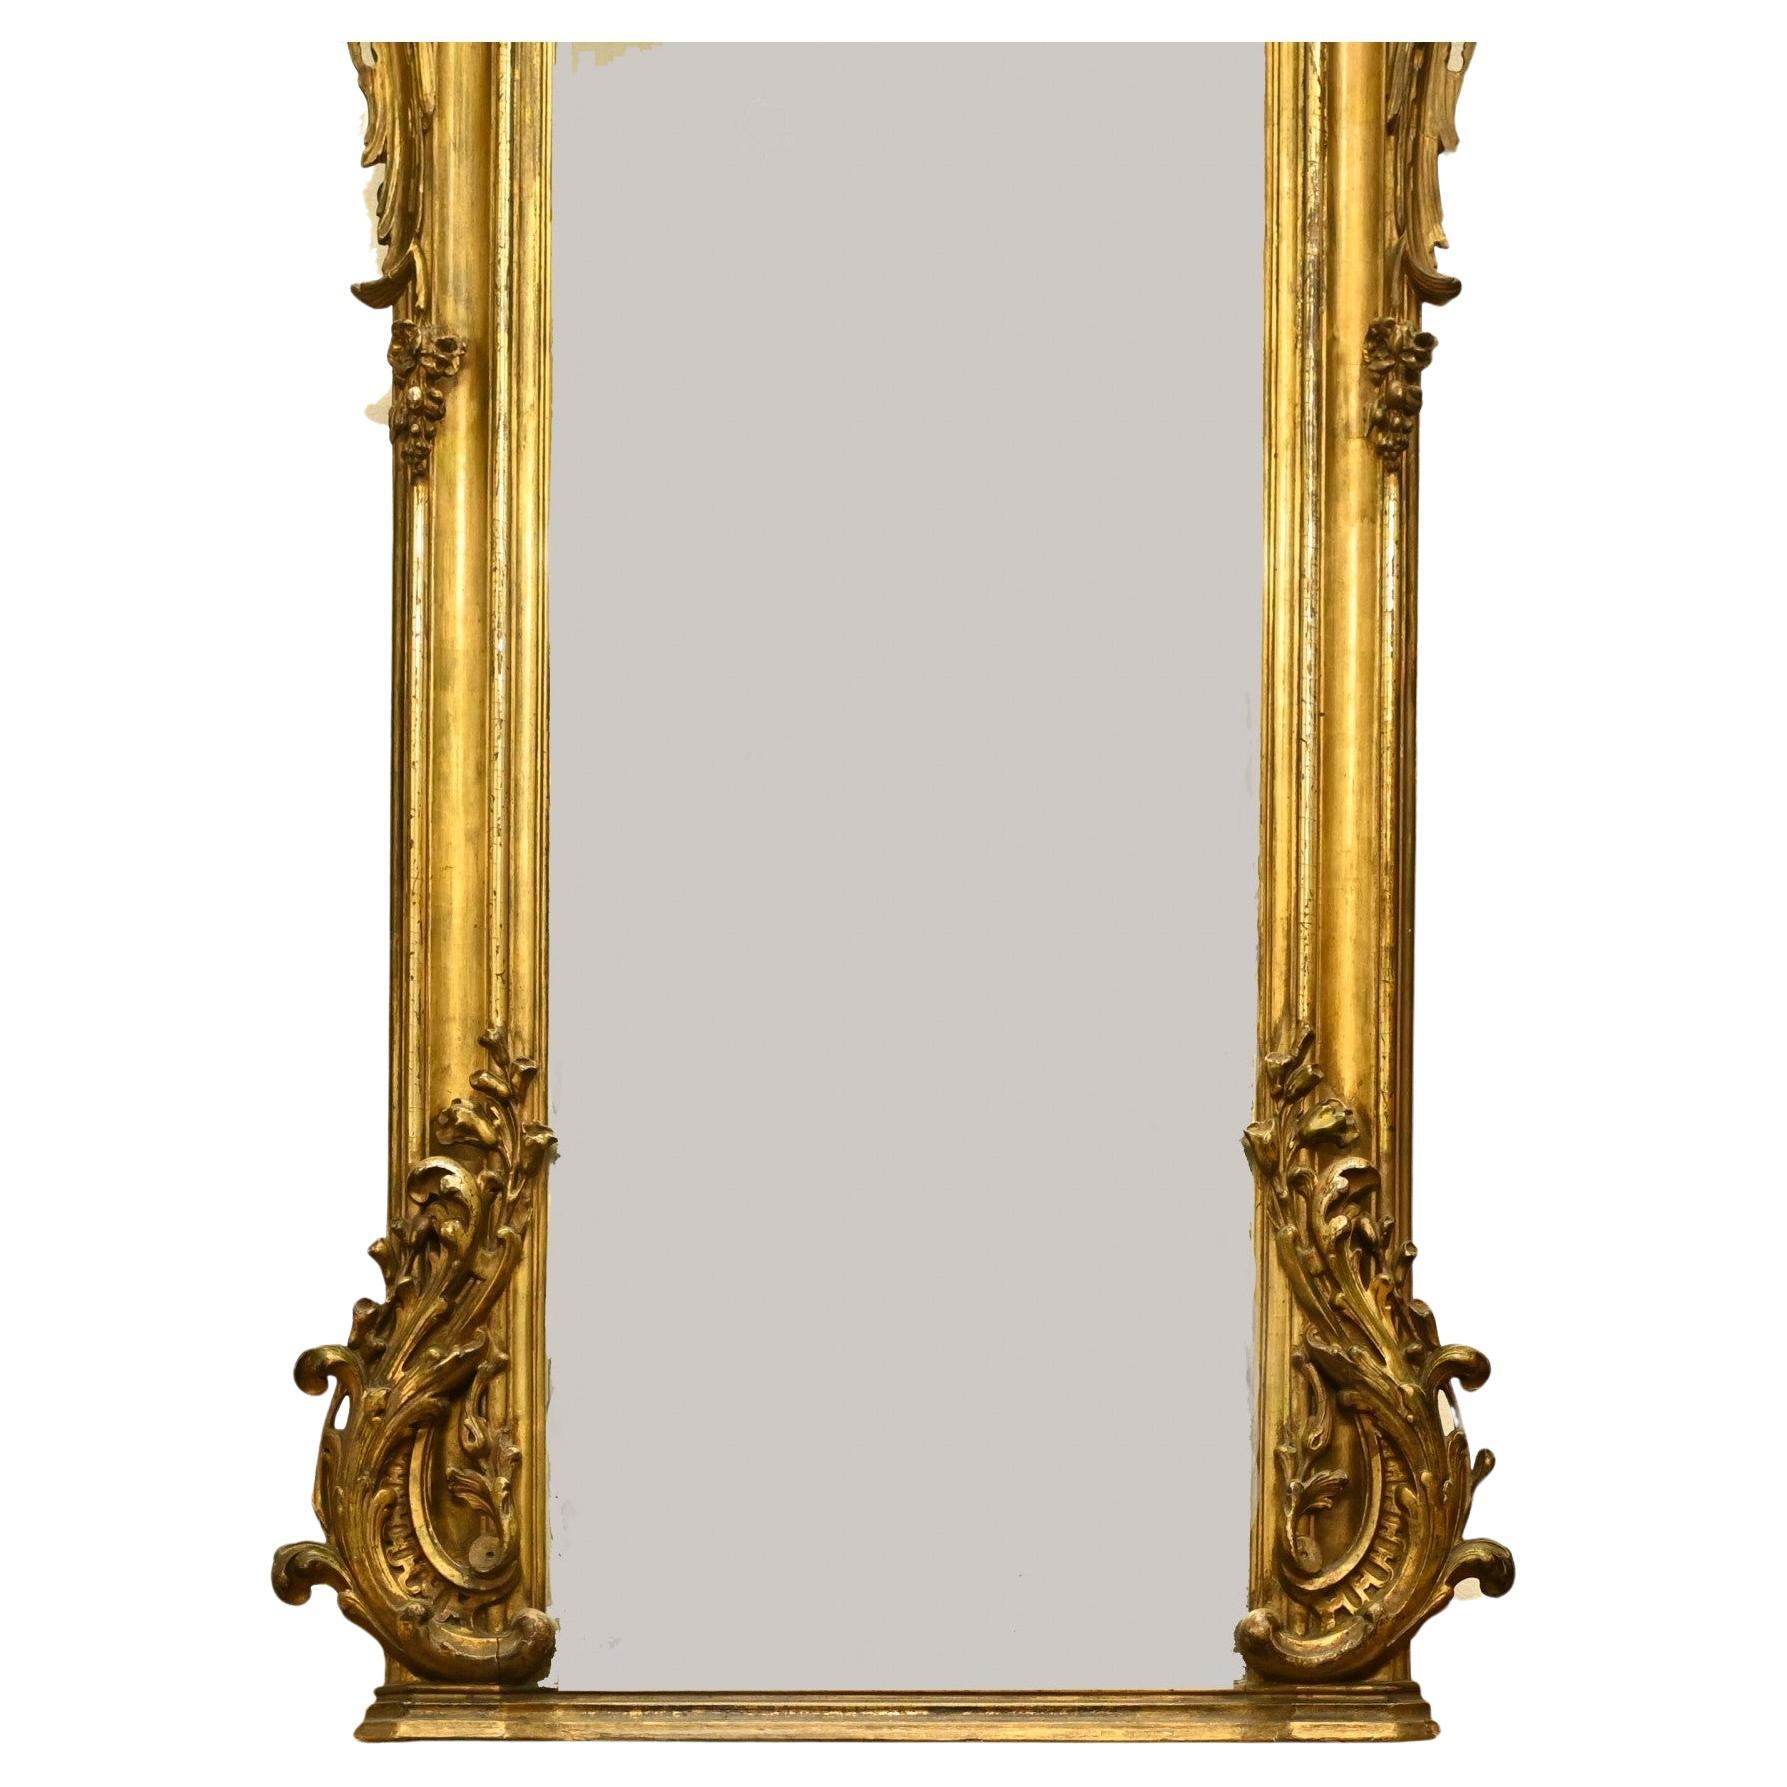 Wunderschöner antiker französischer vergoldeter Pfeilerspiegel
Gute Größe mit fast einem Meter Höhe - 172 CM
Sehr verzierter Rahmen mit Dekoration an den Seiten und oben mit Rokoko-Kartusche
Das Glas ist klar und frei von Fehlern
Gekauft bei einem